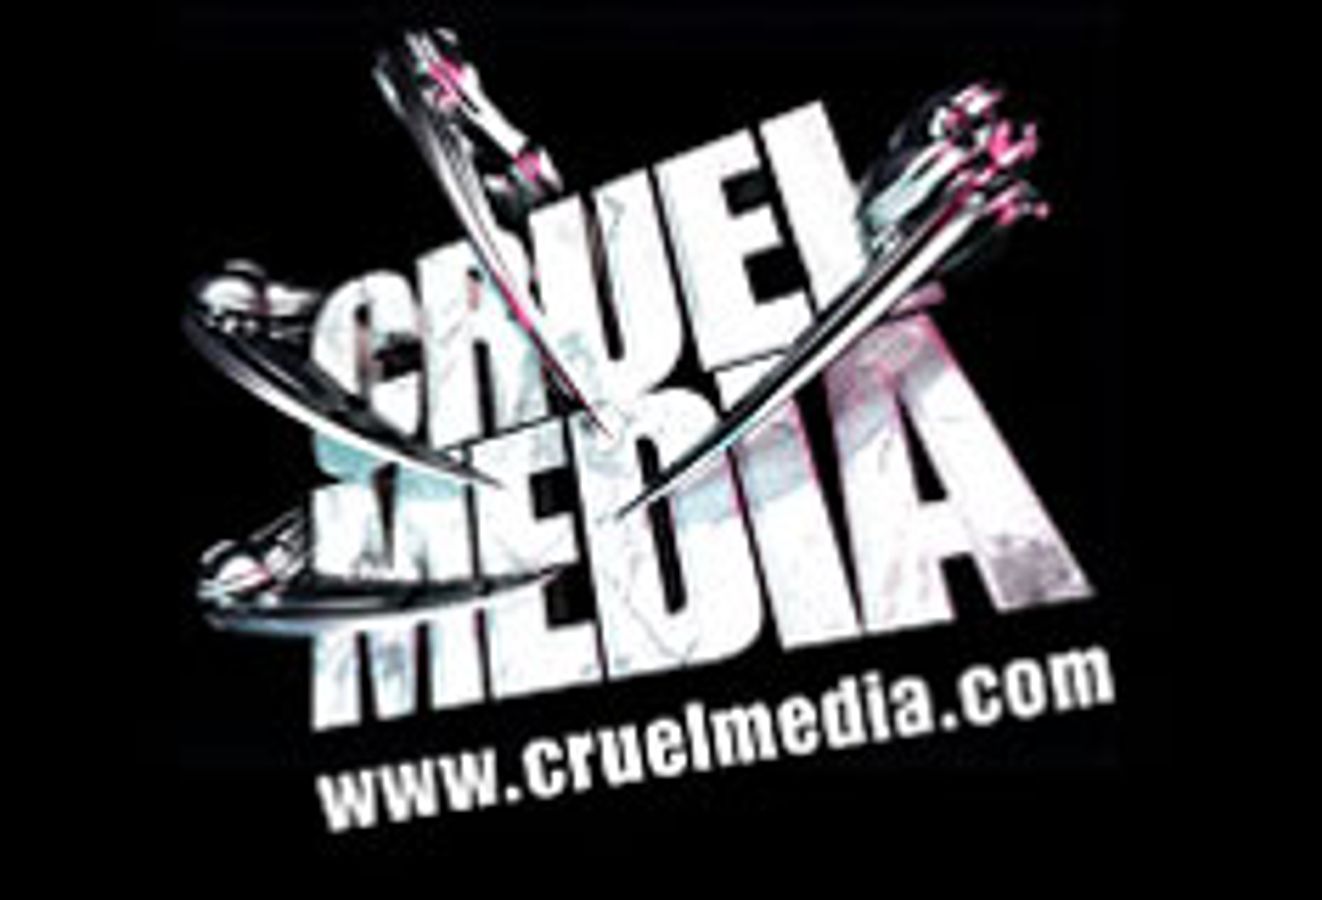 Cruel Media Productions